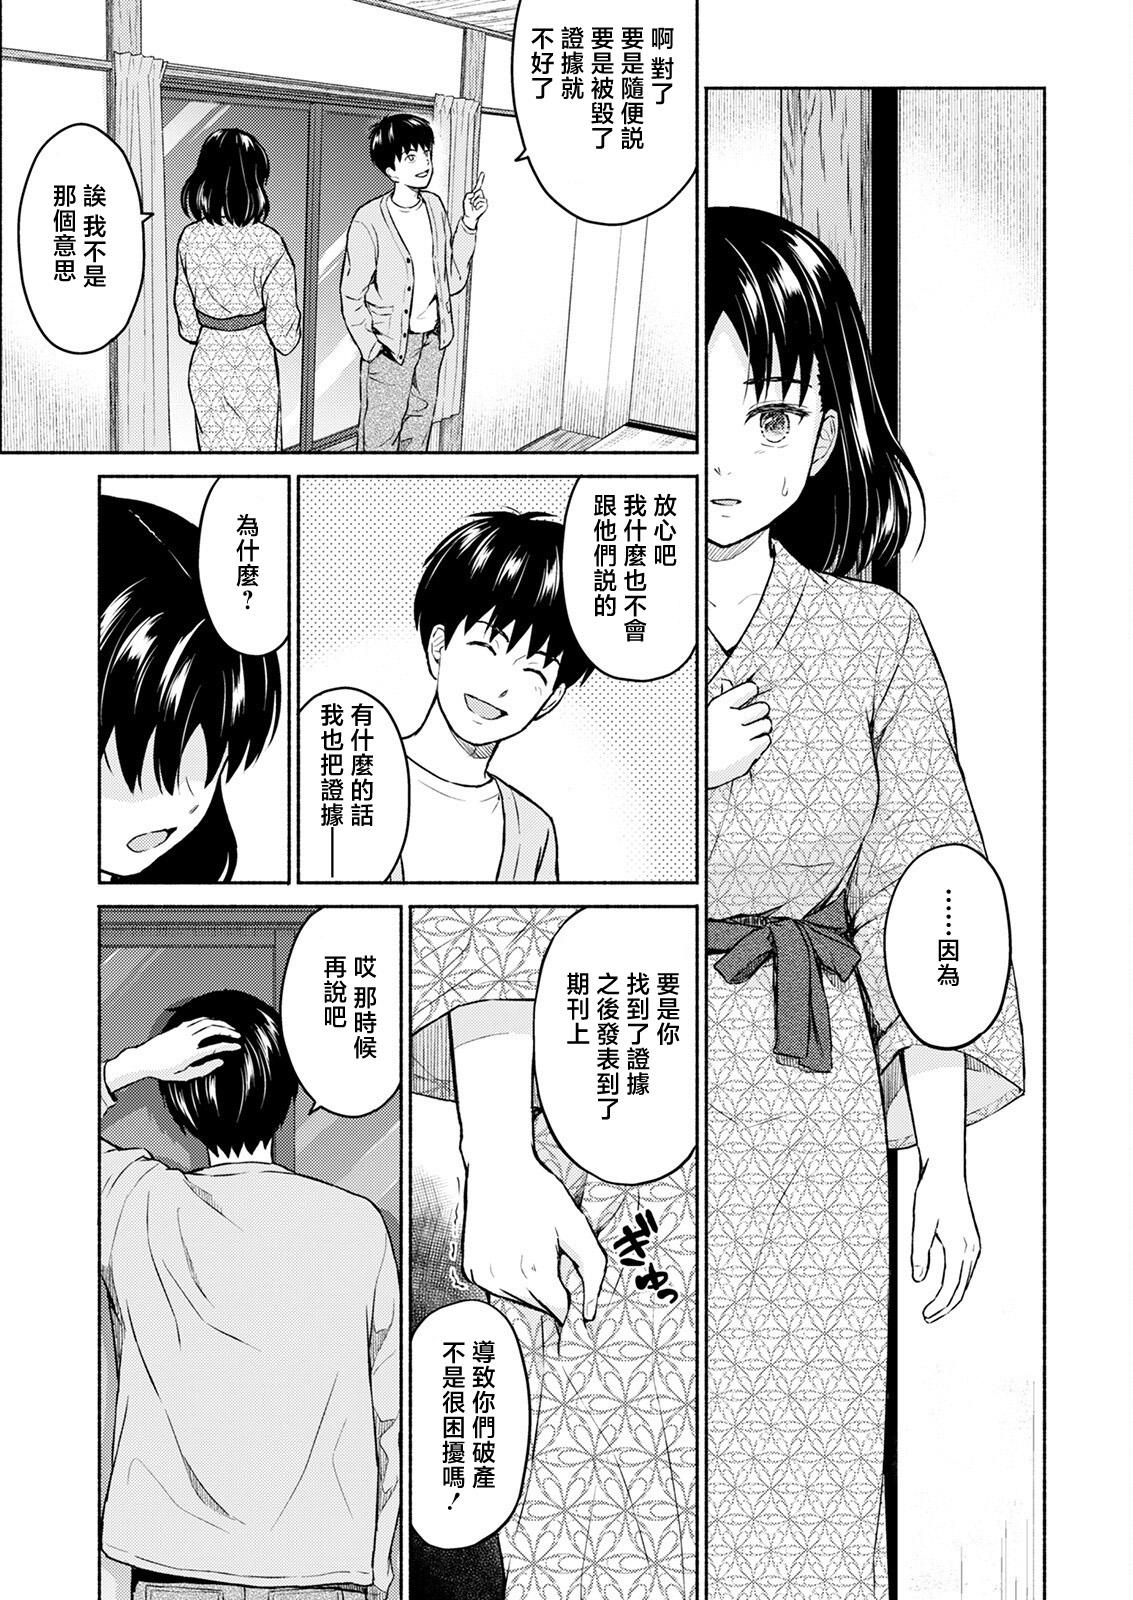 Foreplay Marude Rokugatsu no Kohan o Fuku Kaze no you ni Zenpen Jock - Page 9